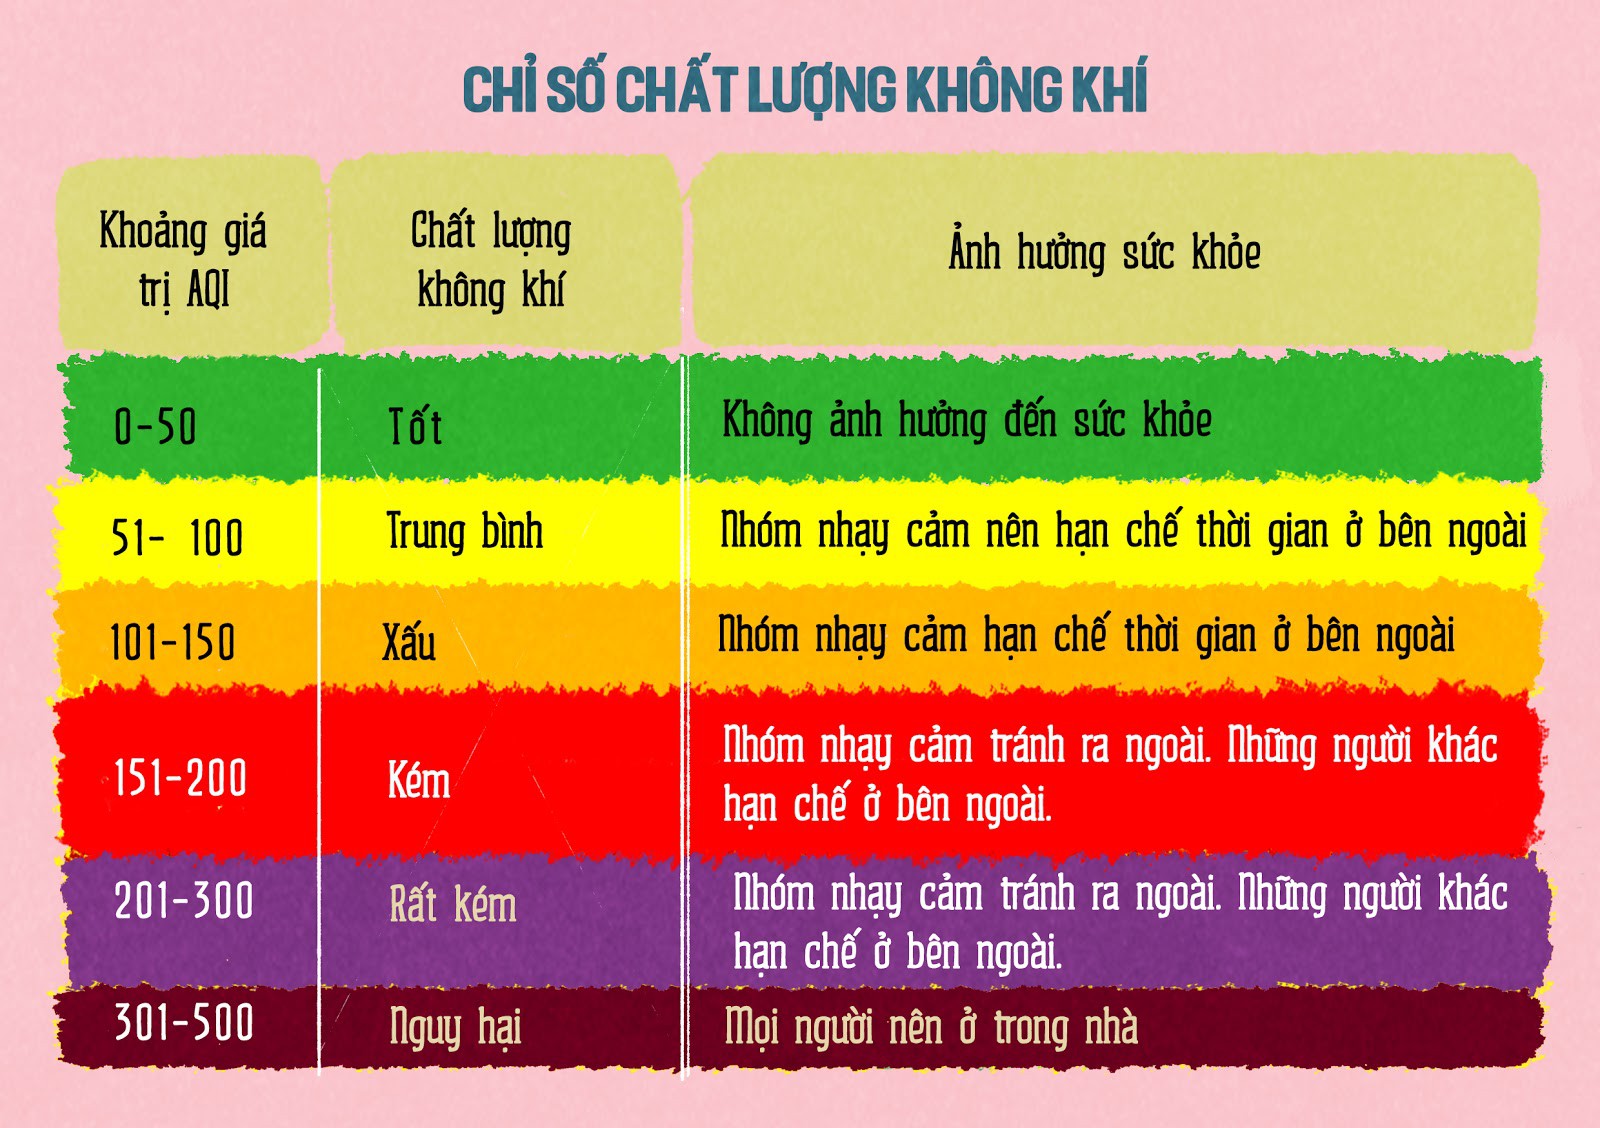 chat-luong-kk-3